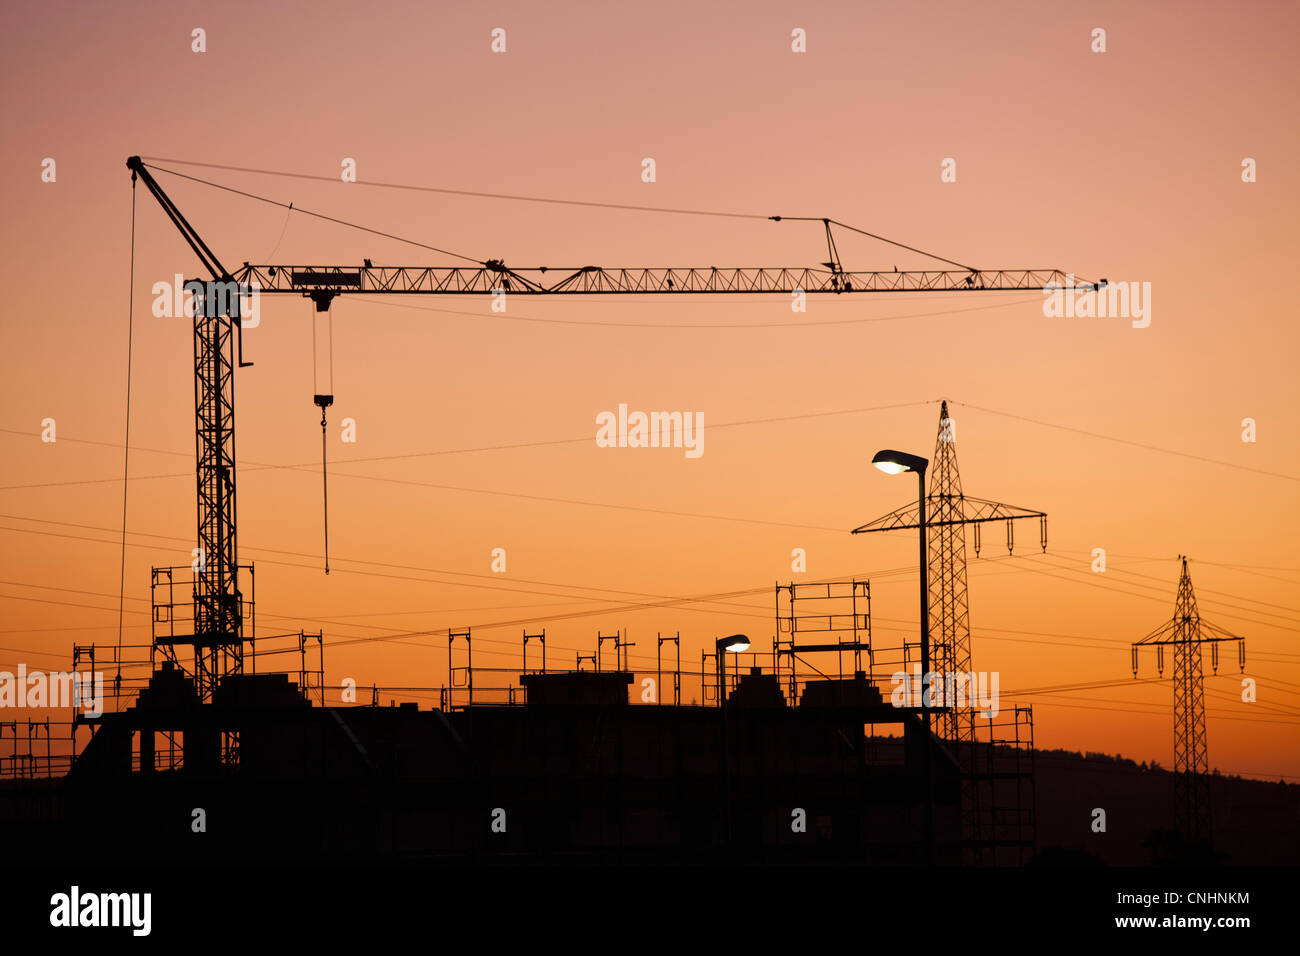 Ein Bau Kran und Elektrizität Masten Silhouette gegen Sonnenuntergang Himmel Stockfoto